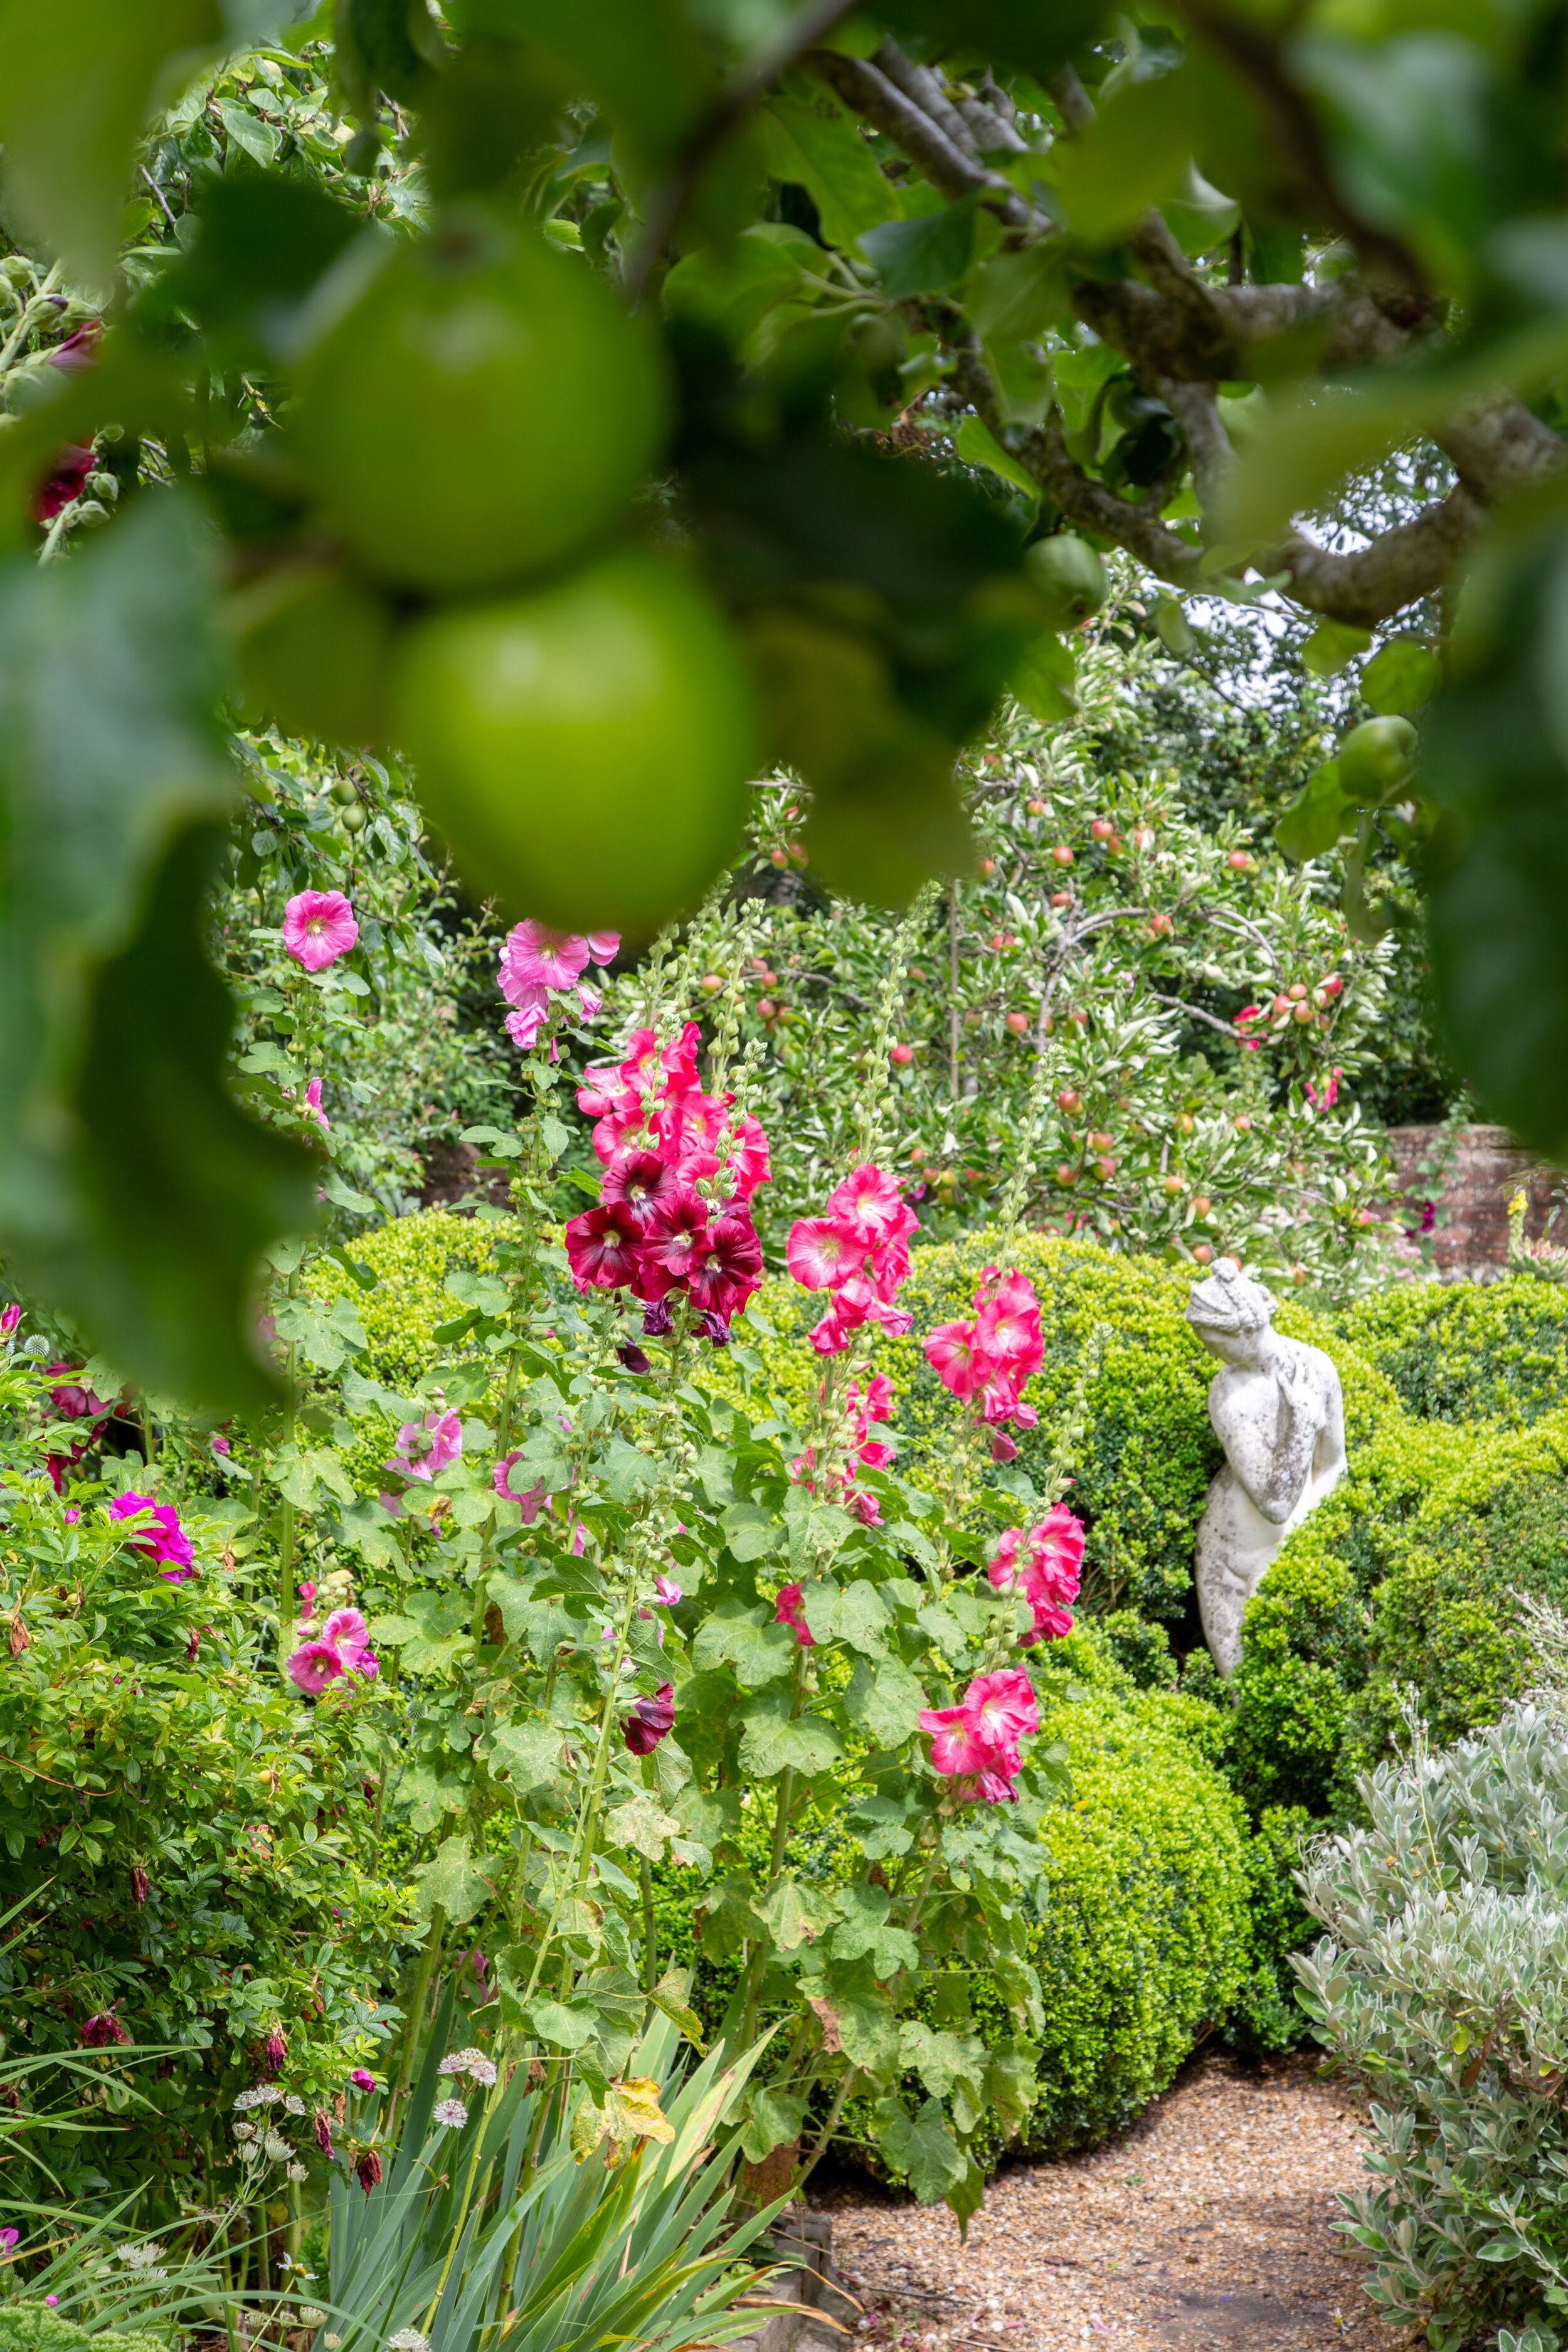 Apples + flower bed Charleston**.jpg